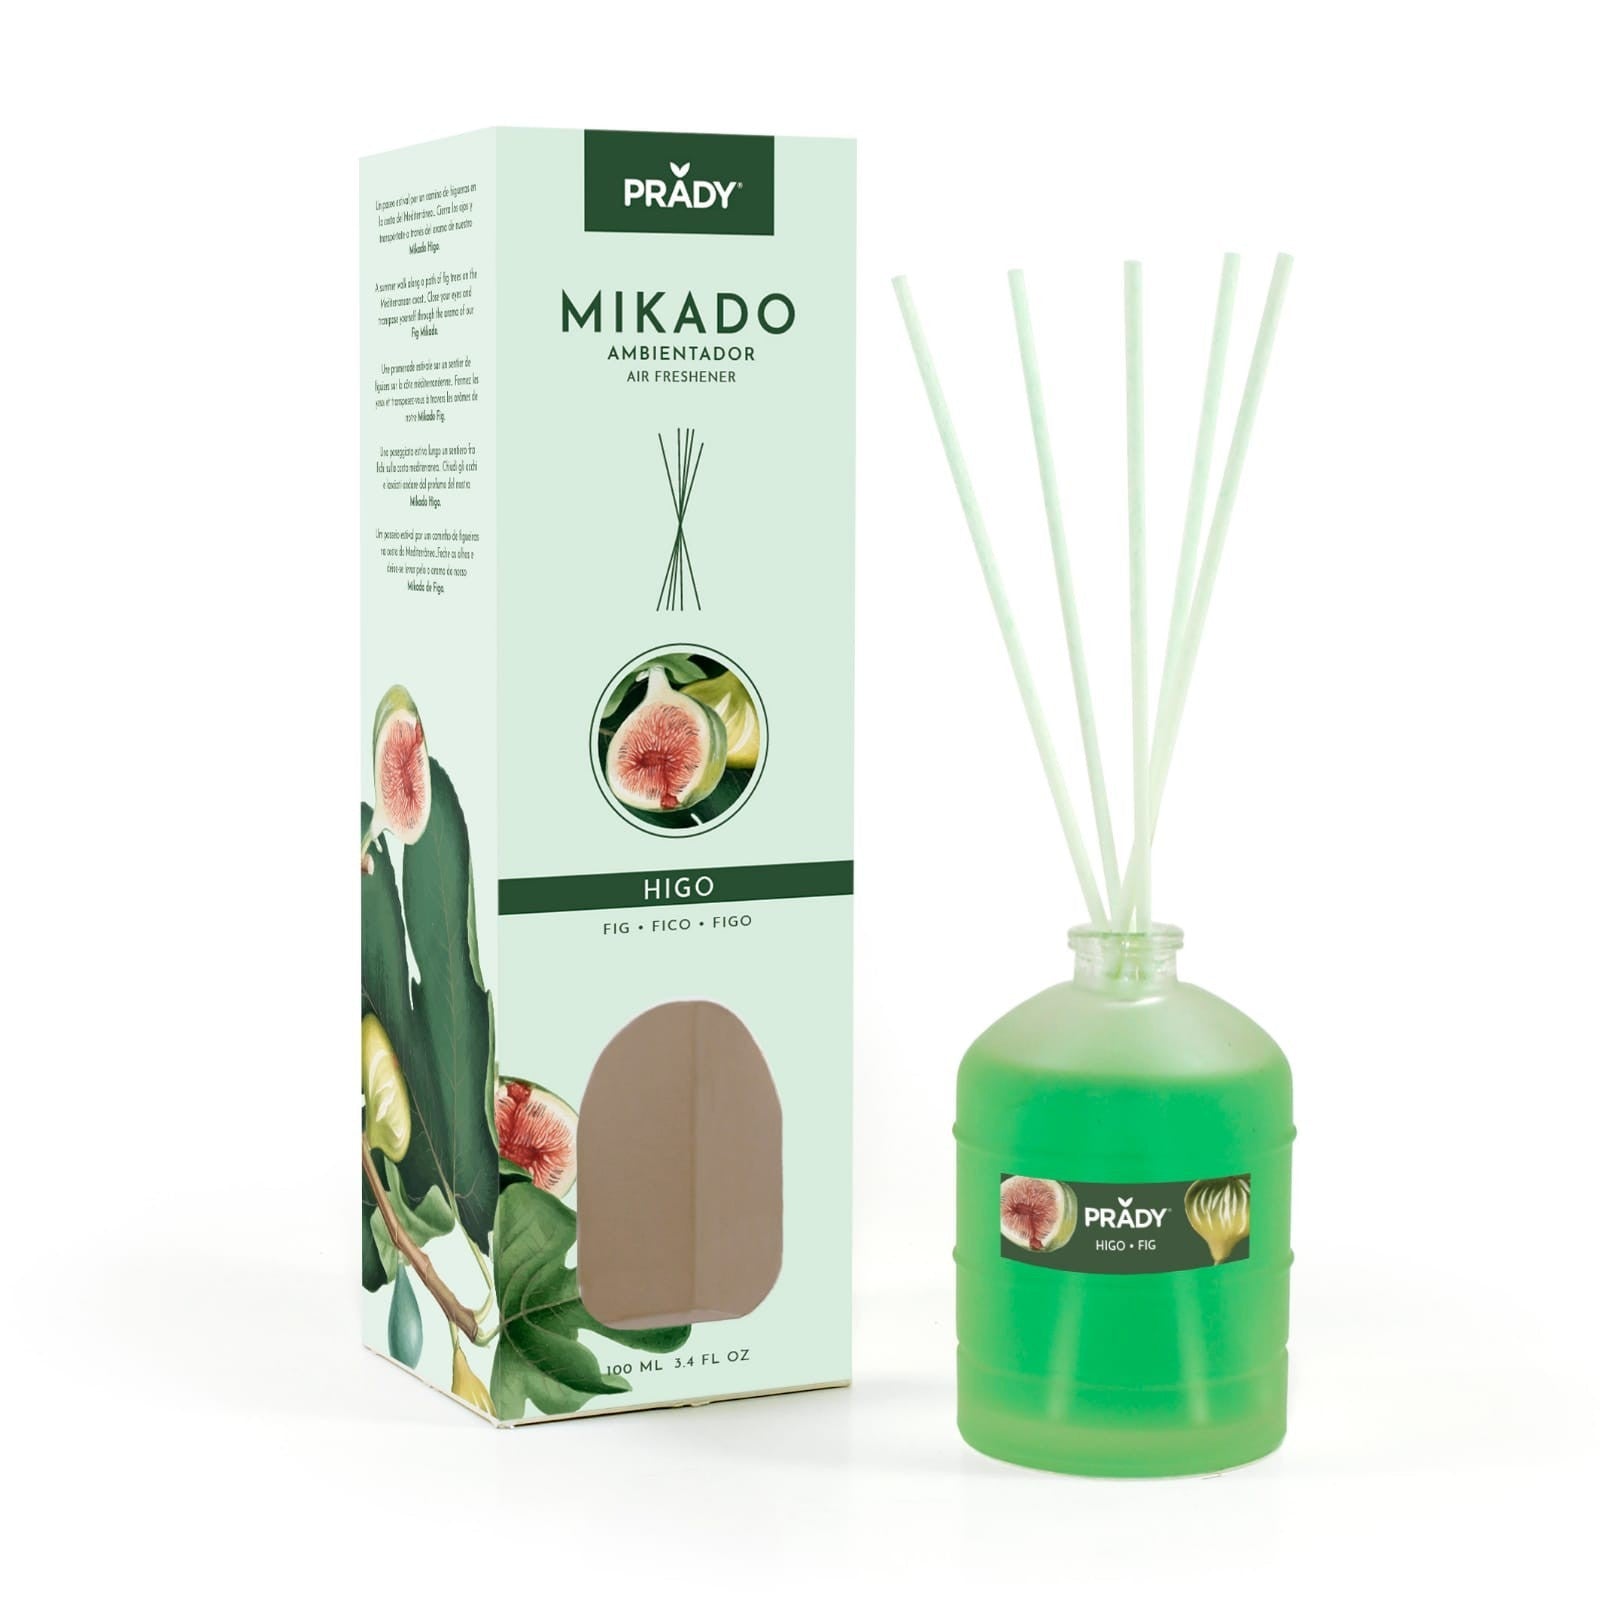 MIKADO "FIGUE" 100 ml de perfumes prady